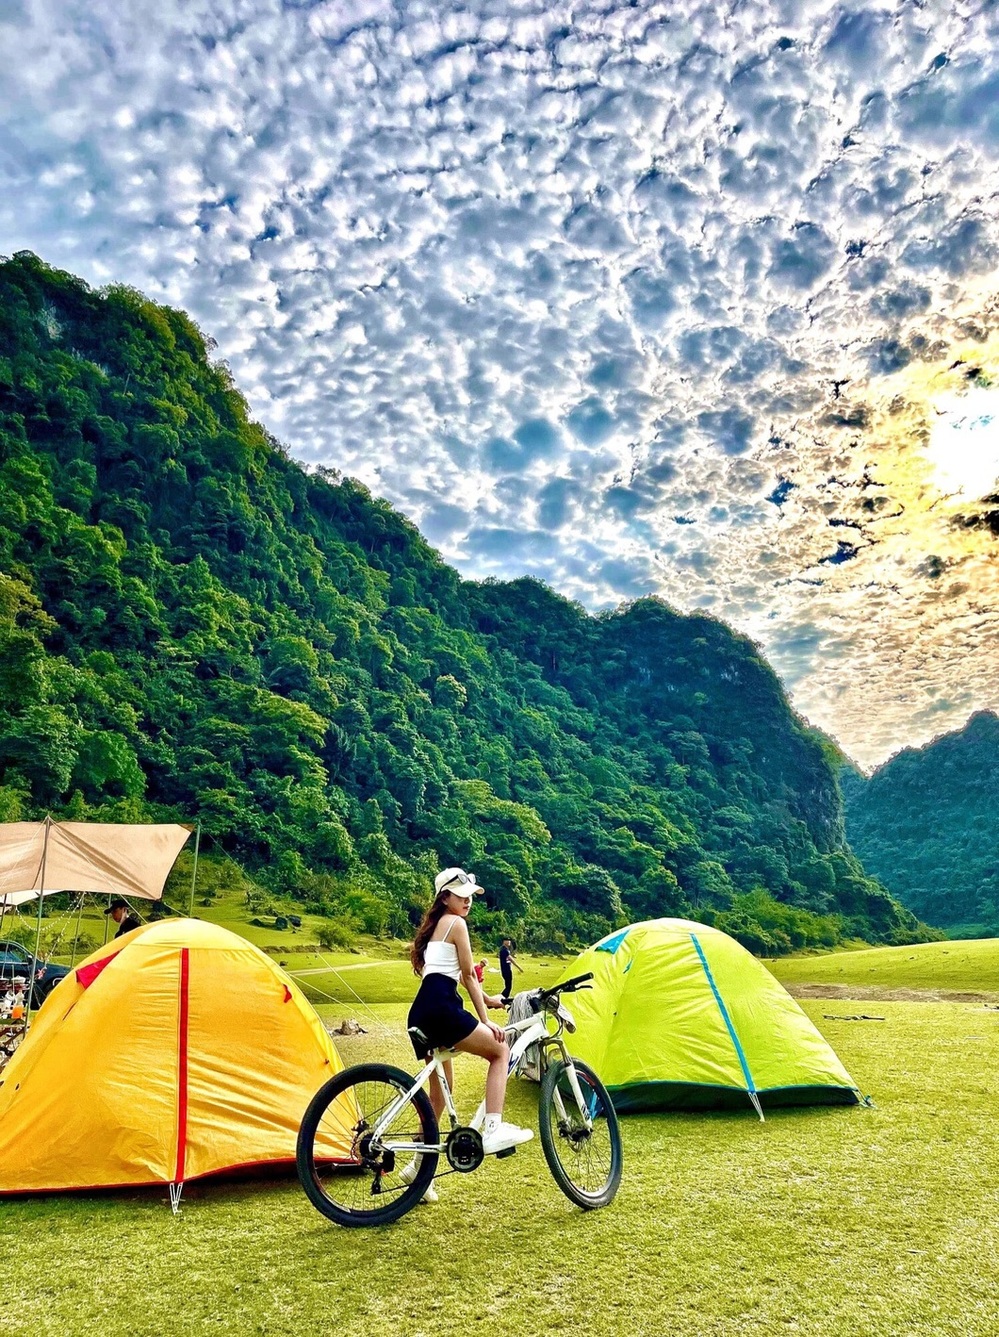  
Bạn cũng có thể đi dạo hoặc đạp xe trên thảm cỏ trải dài bất tận ở núi Mắt Thần. (Ảnh: Tuổi trẻ)